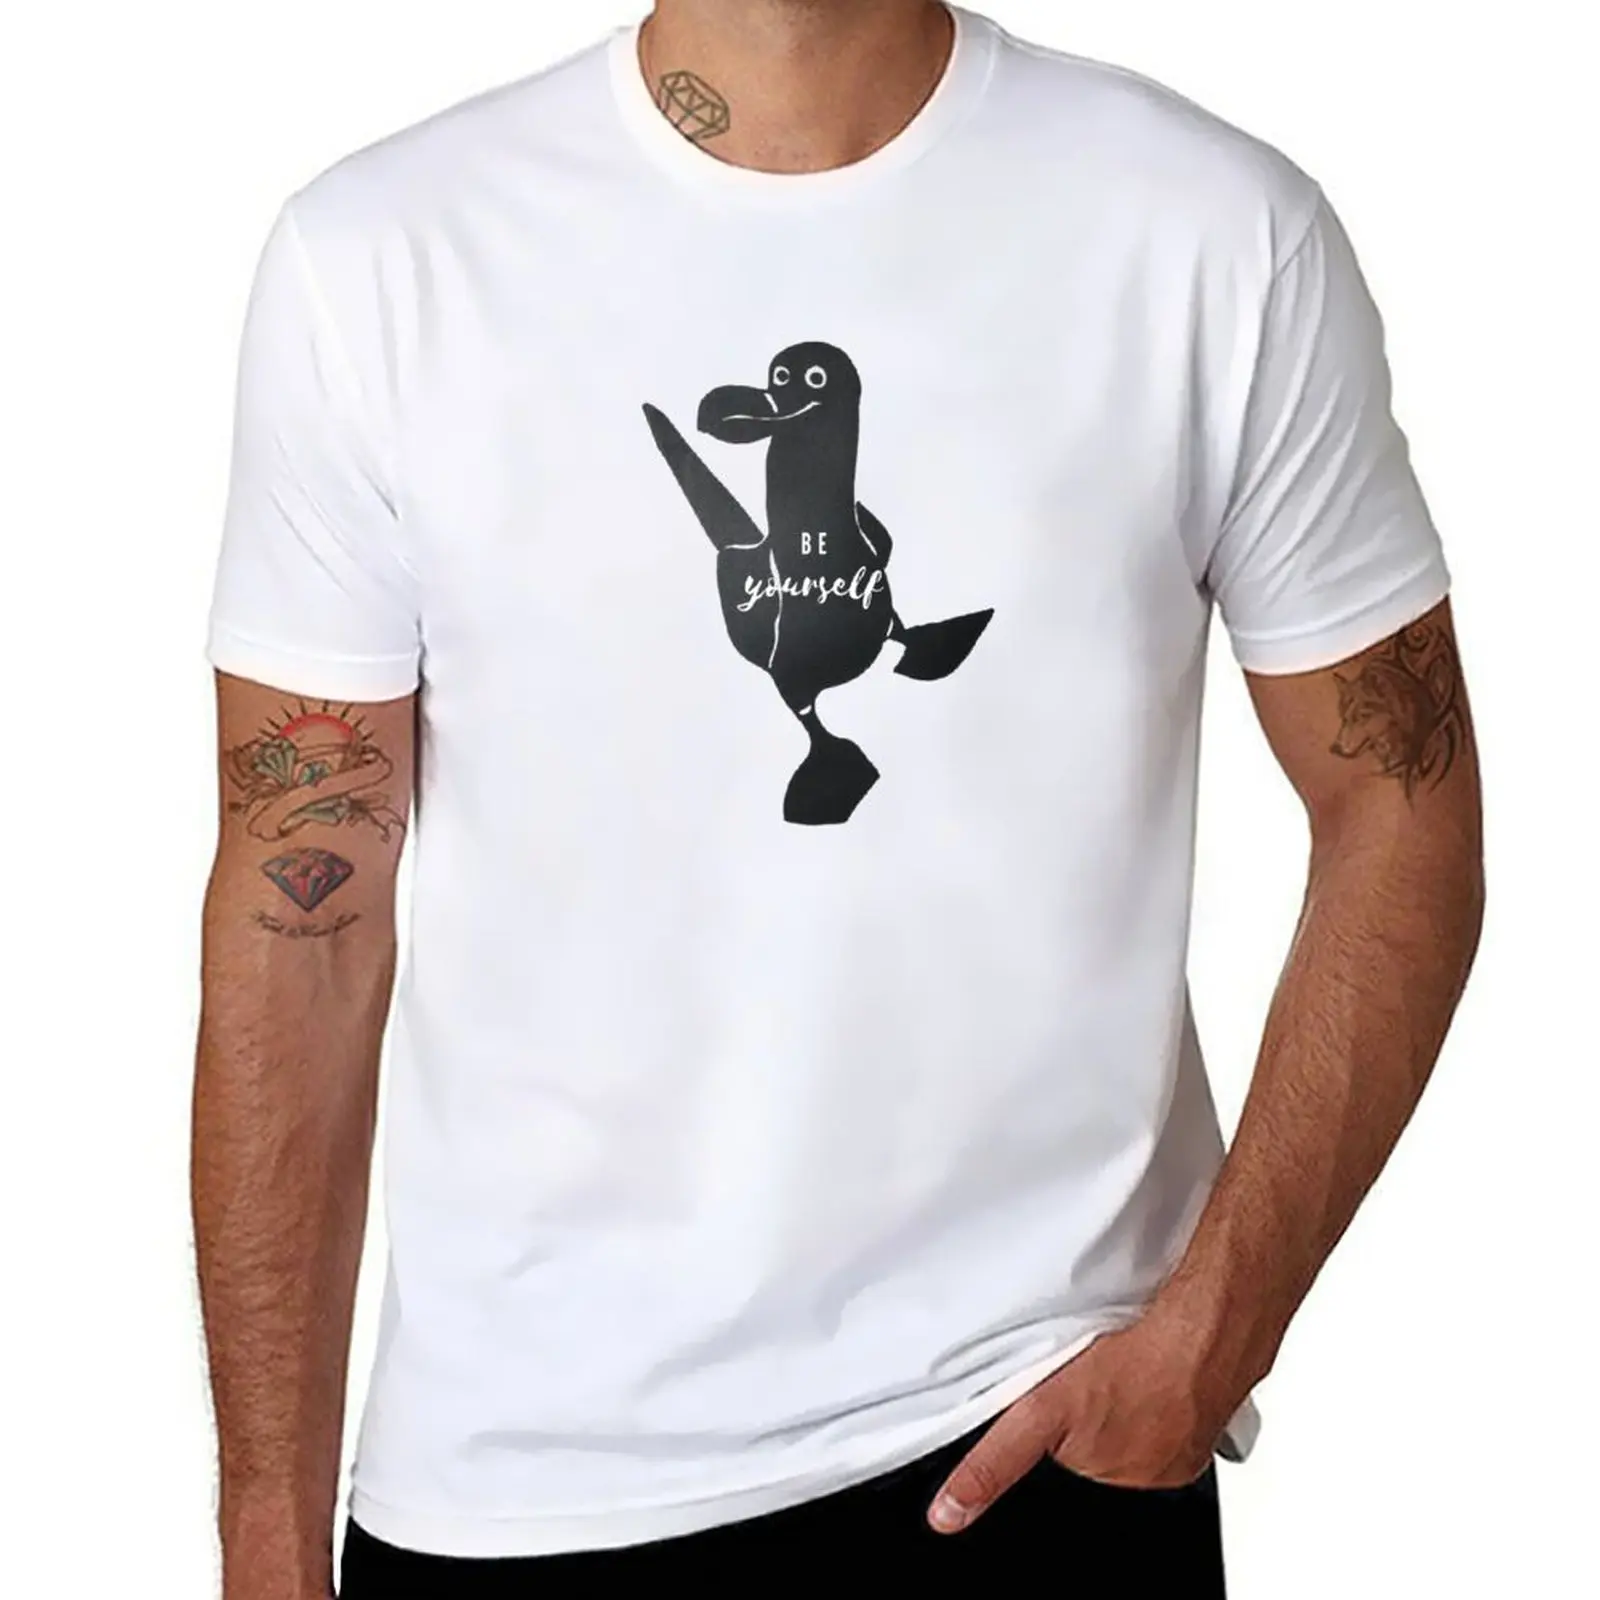 Новая футболка Be Yourself с синей лапкой Booby Bird от Christie Olstad с трафаретным принтом, летний топ, забавные футболки для мужчин Изображение 0